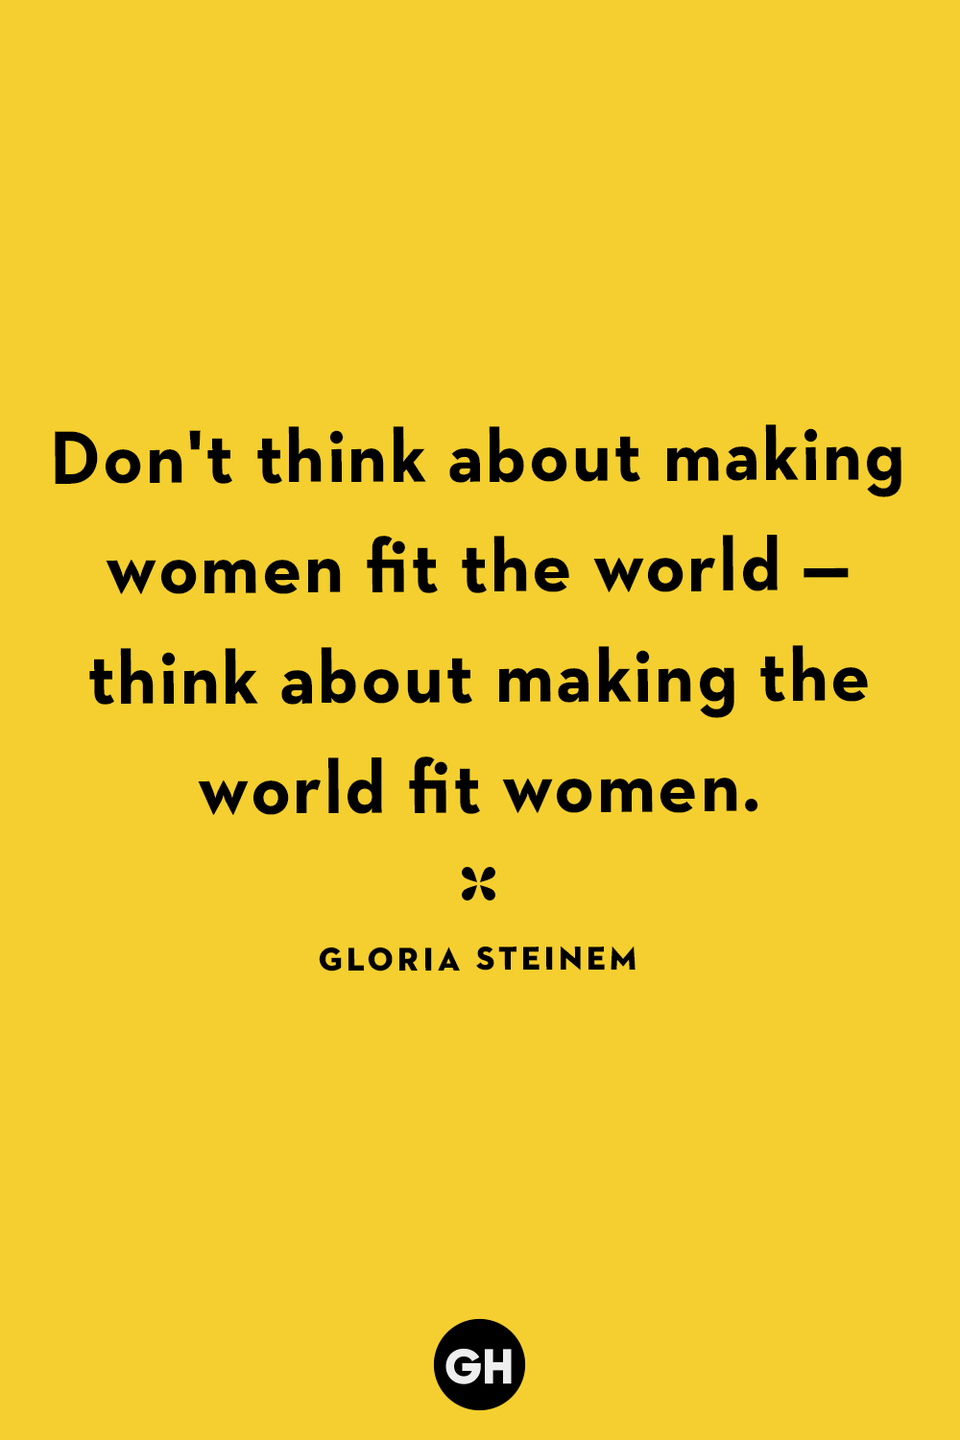 12) Gloria Steinem